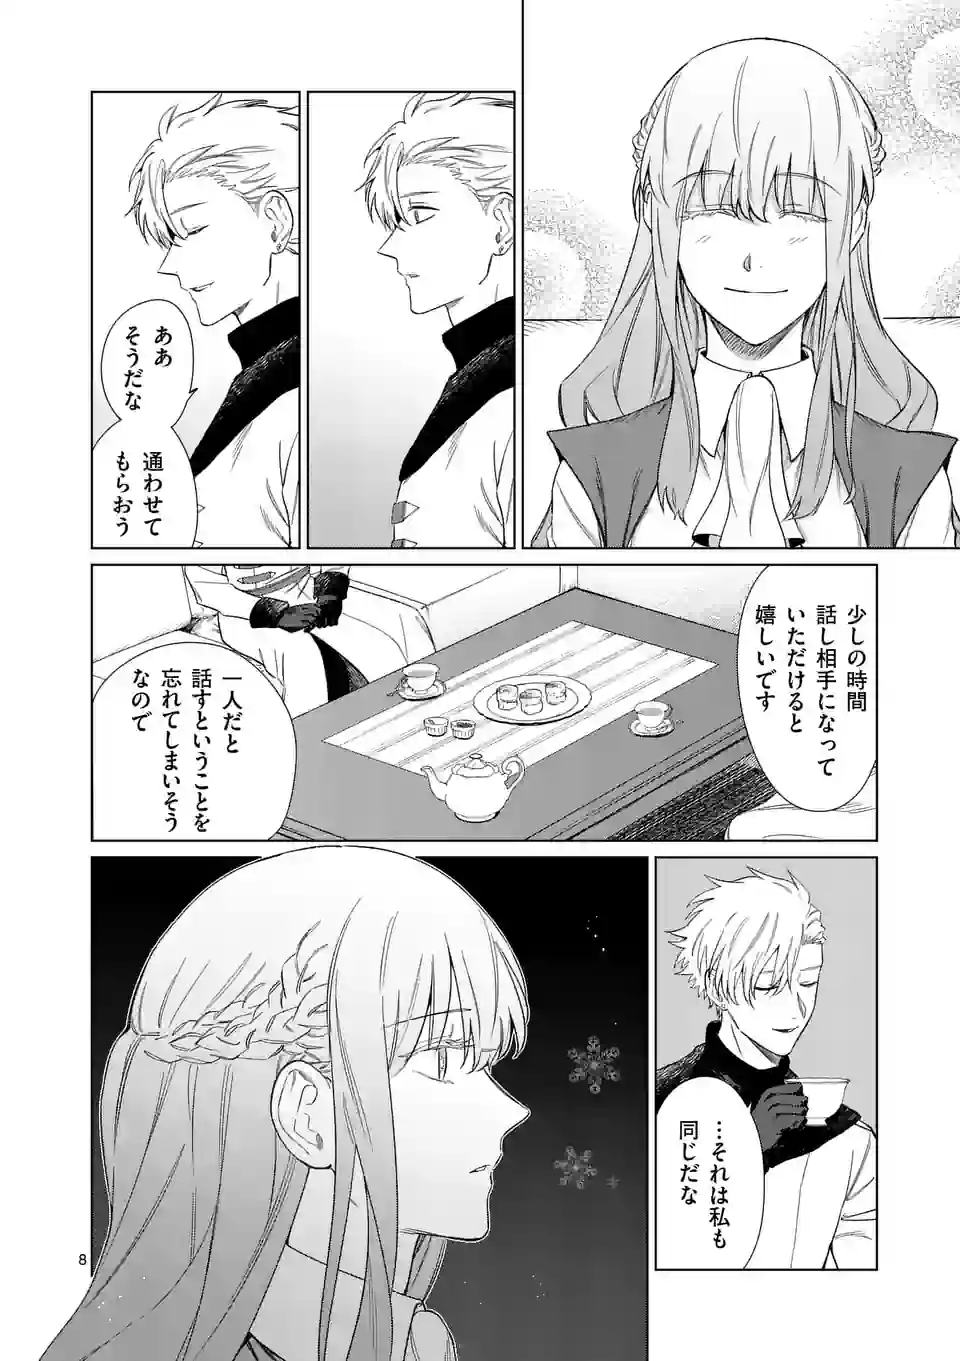 Mou Kyoumi ga Nai to Rikonsareta Reijou no Igai to Tanoshii Shinseikatsu - Chapter 3 - Page 8